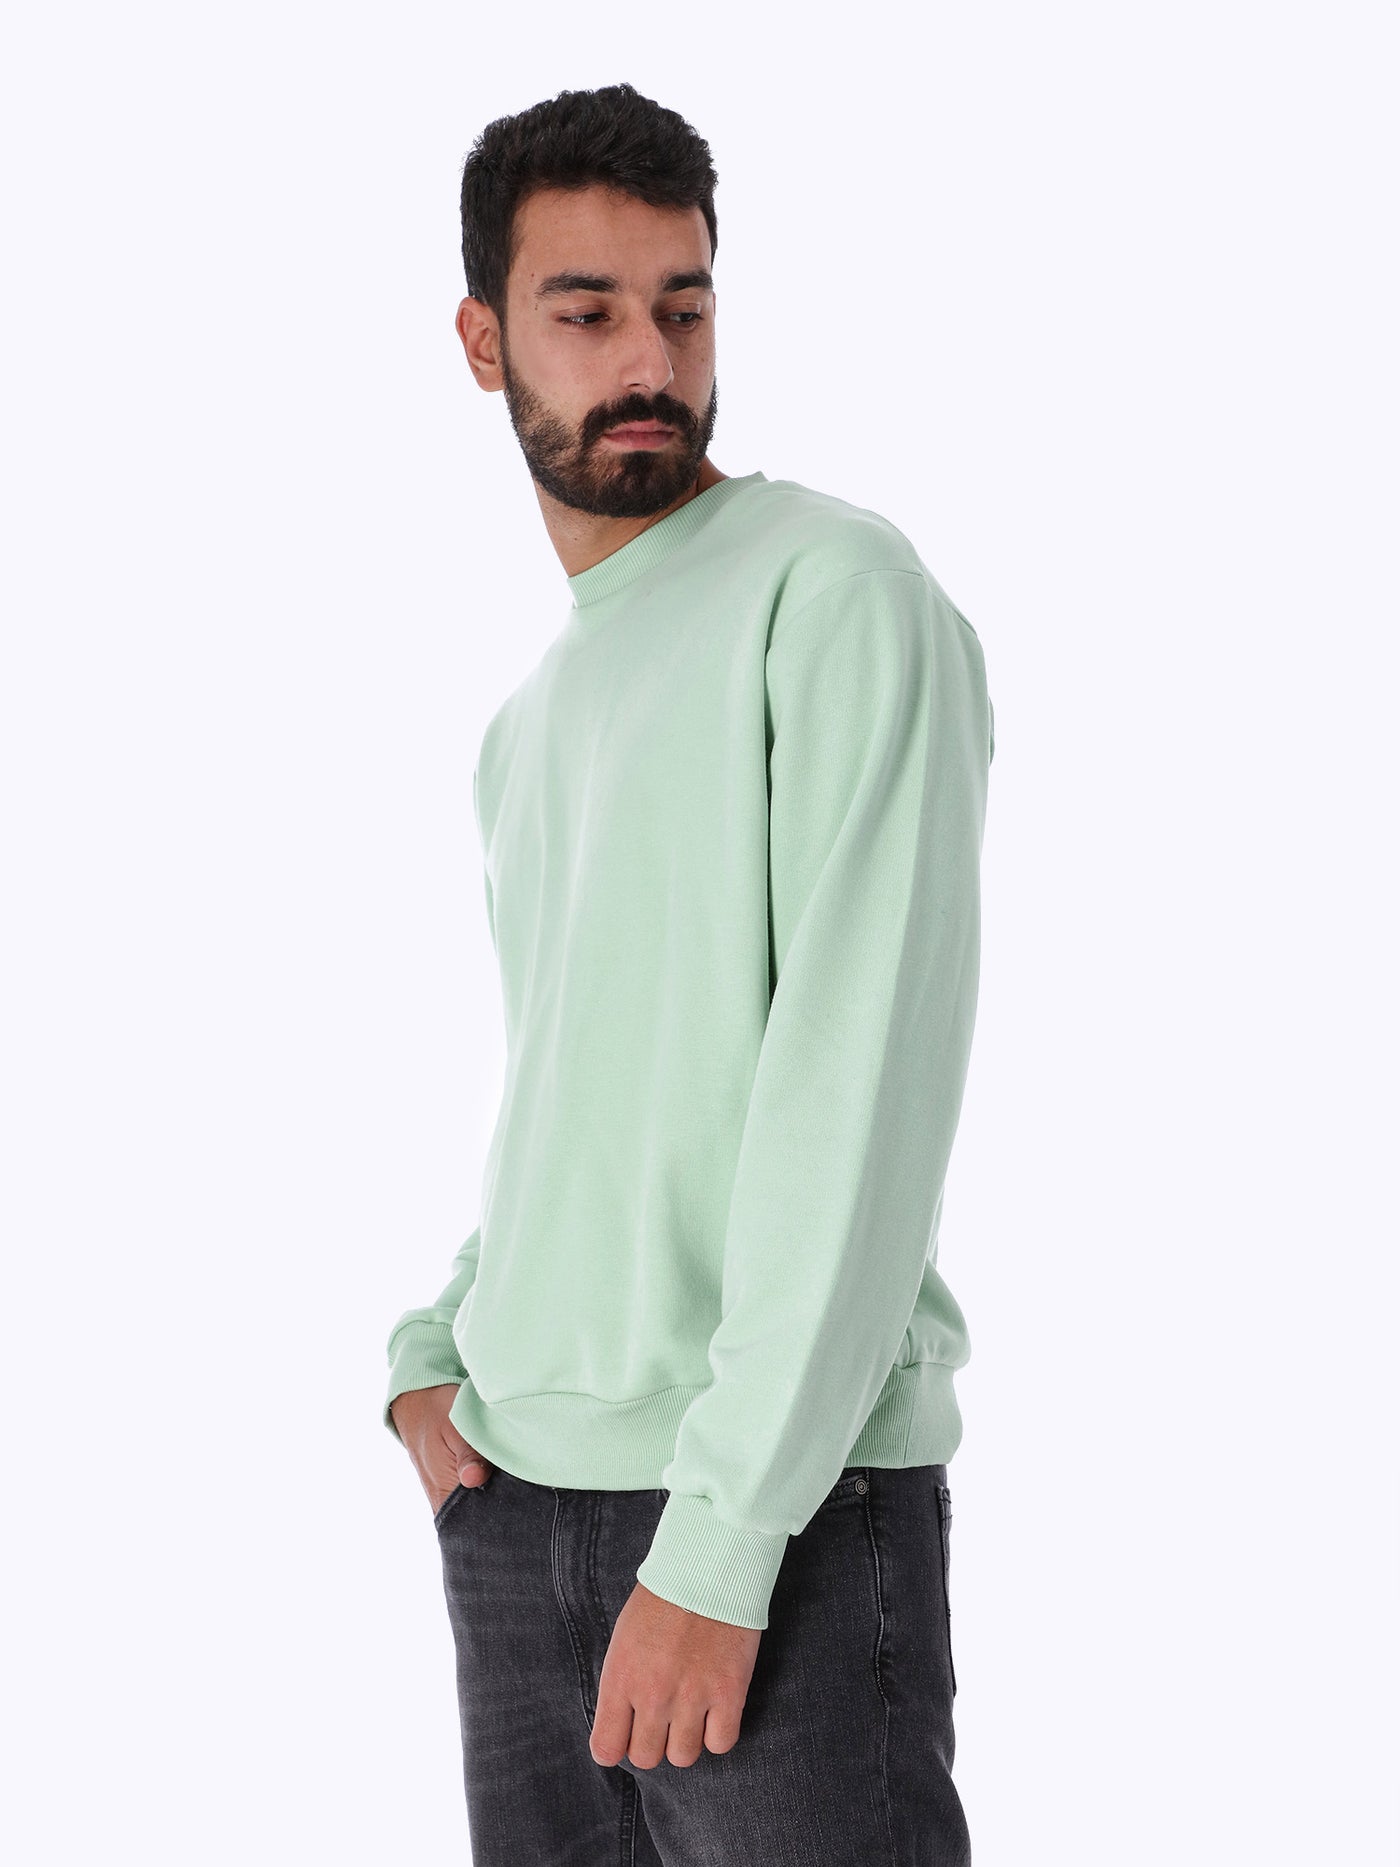 Sweatshirt - Basic